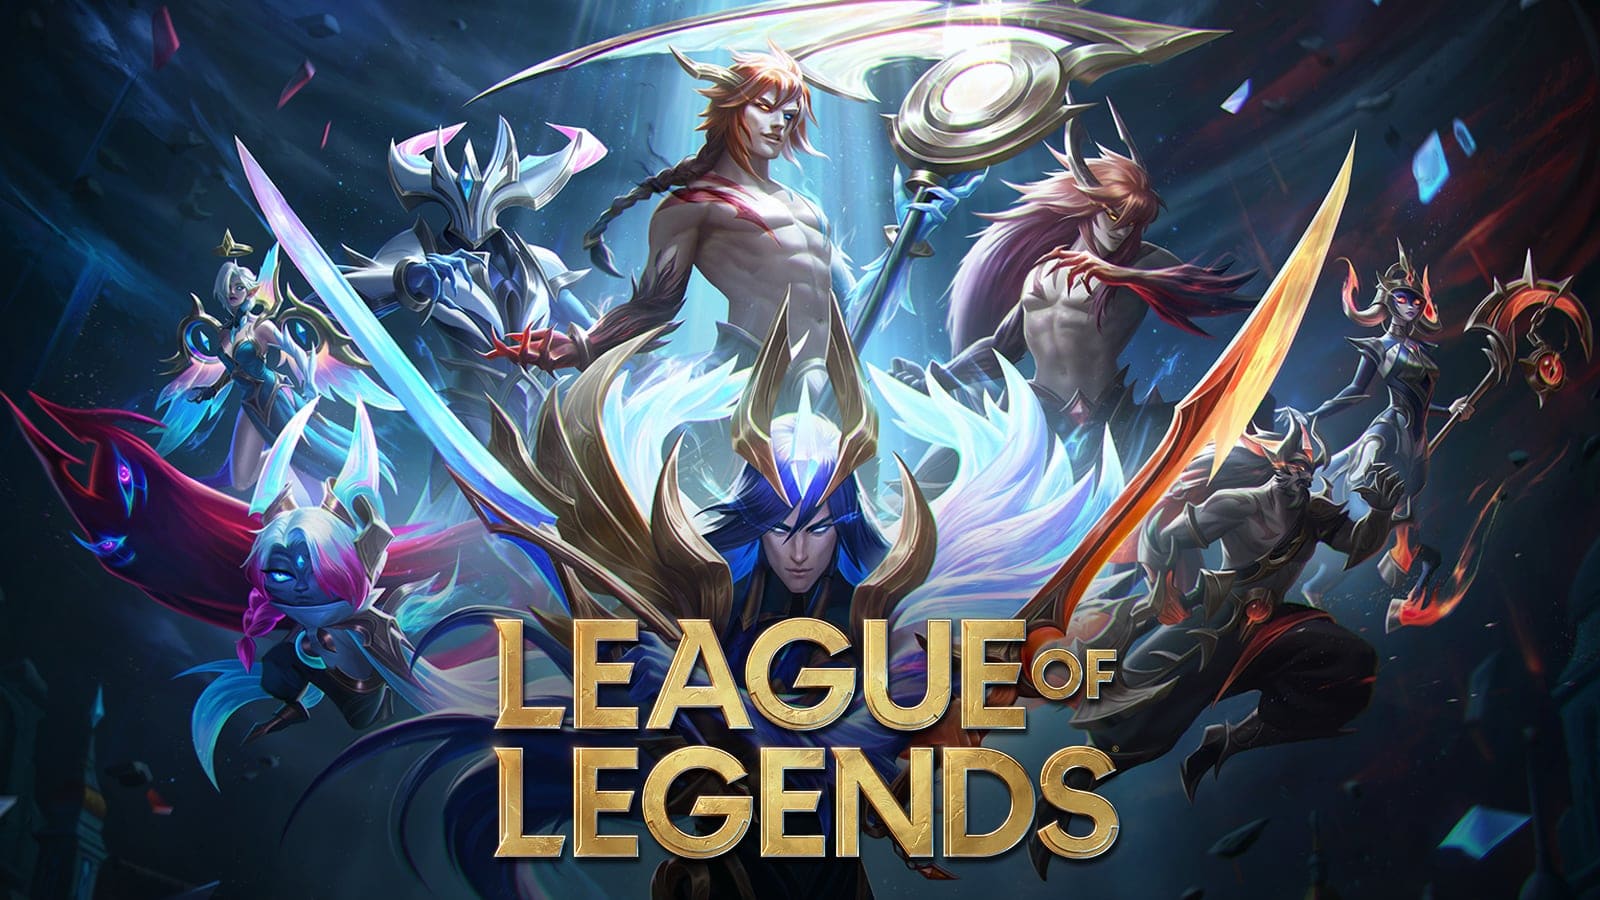 League Of Legends - League of Legends